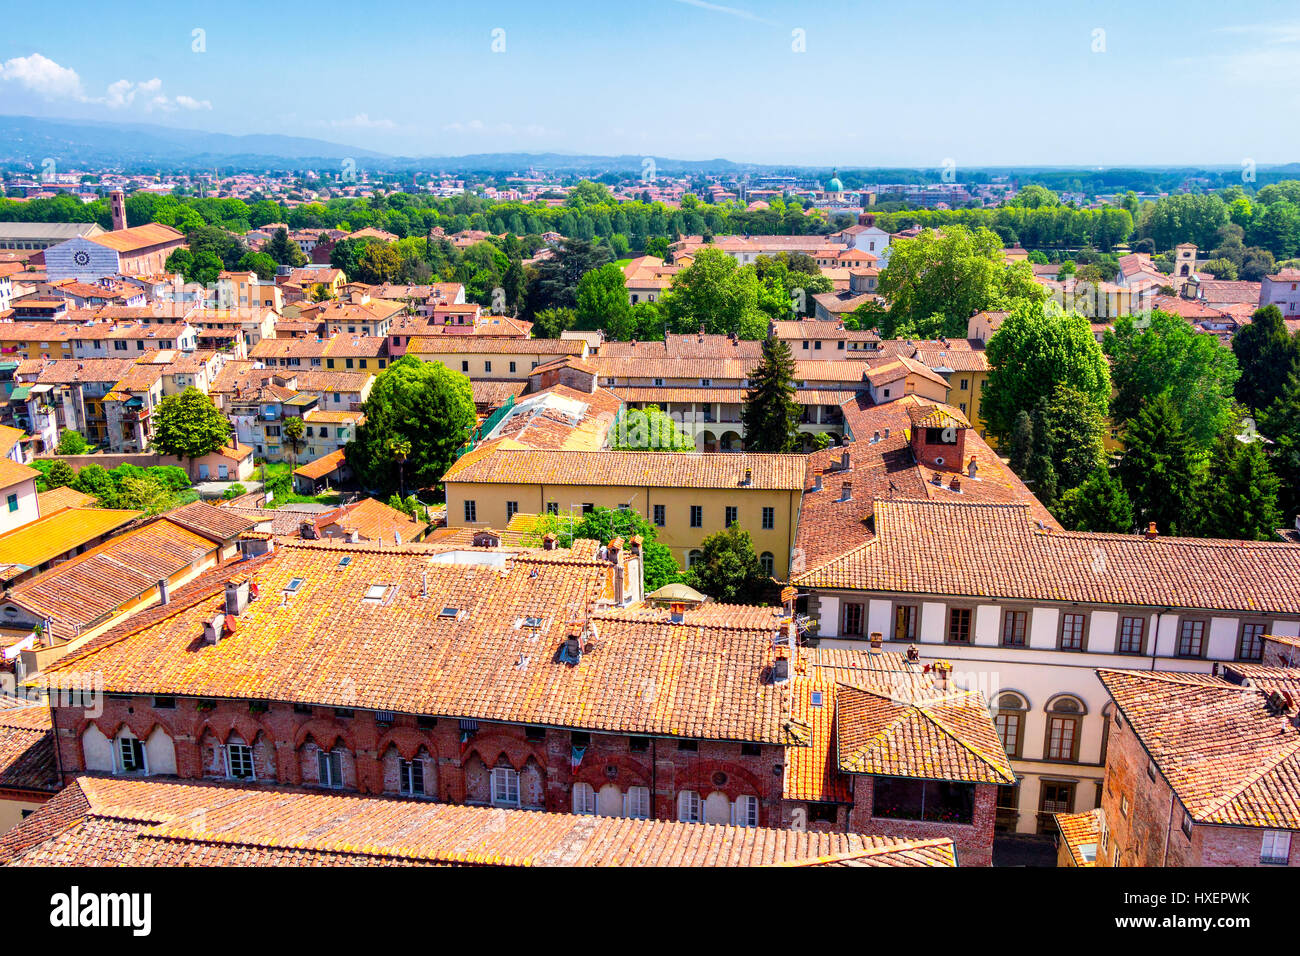 Vue sur ville italienne Lucca avec toits en terre cuite typique Banque D'Images